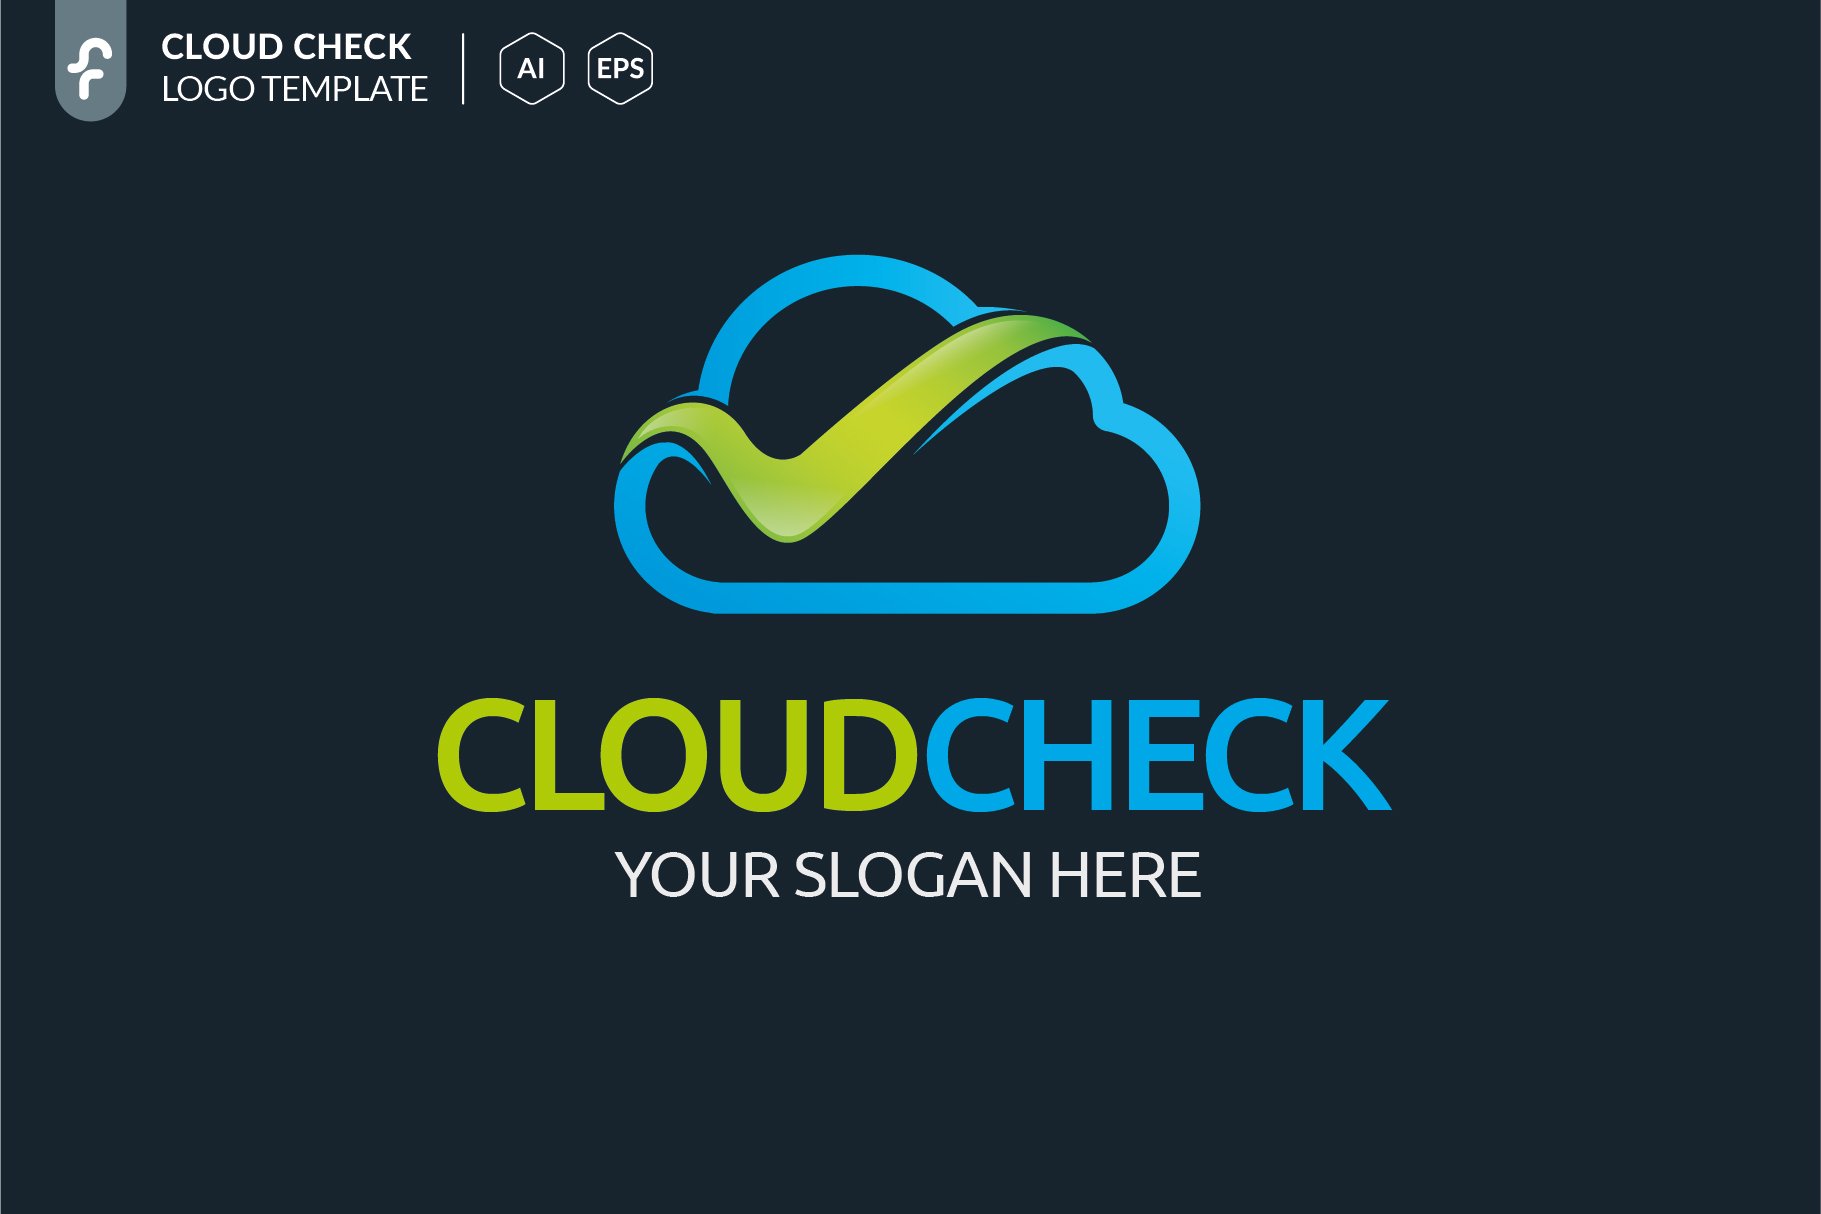 云主题的LOGO模板 Cloud Check Logo #2